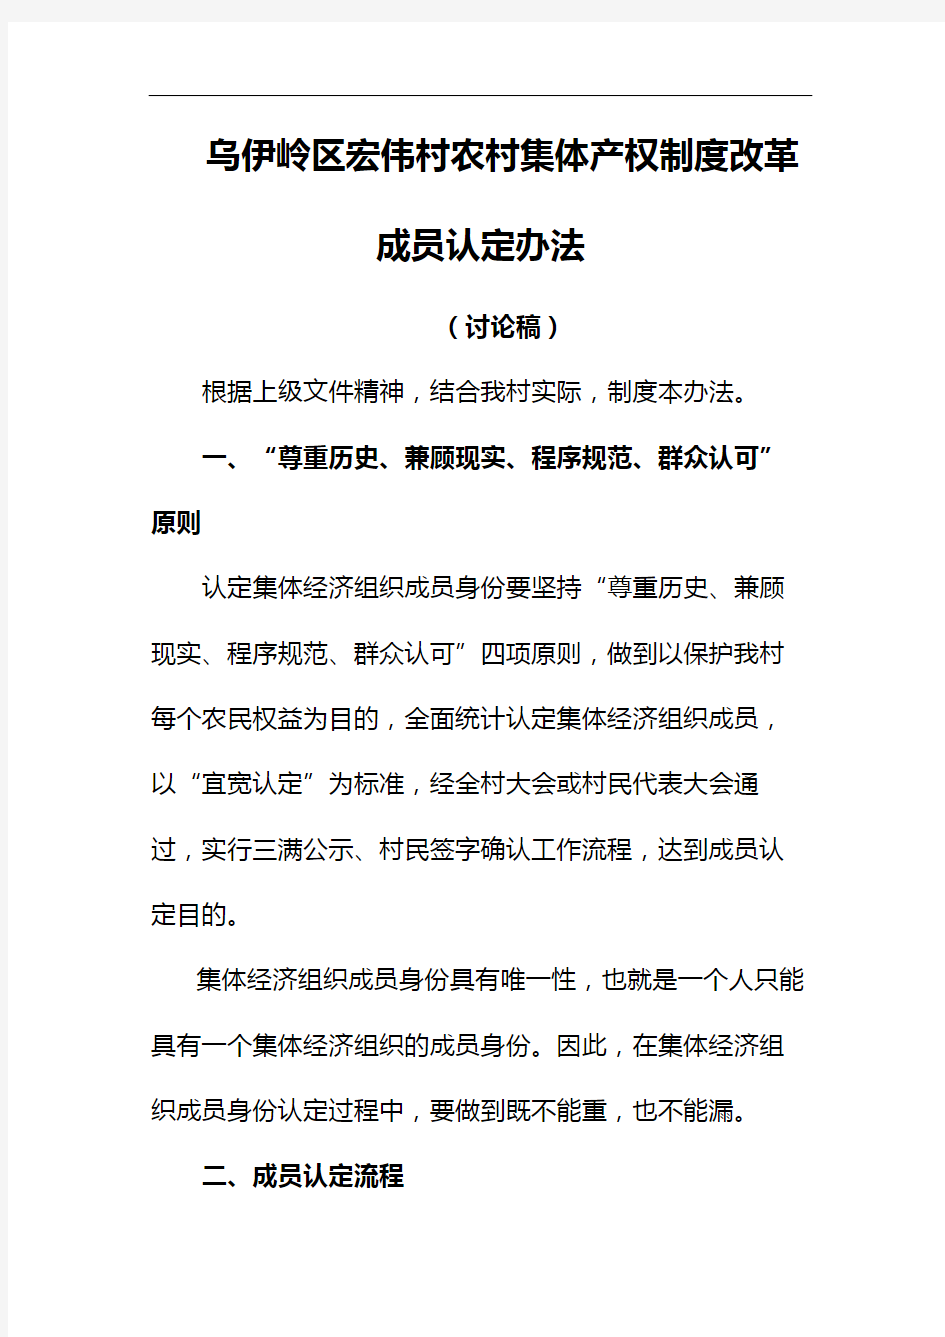 乌伊岭区宏伟村农村集体产权制度改革成员认定办法修订稿